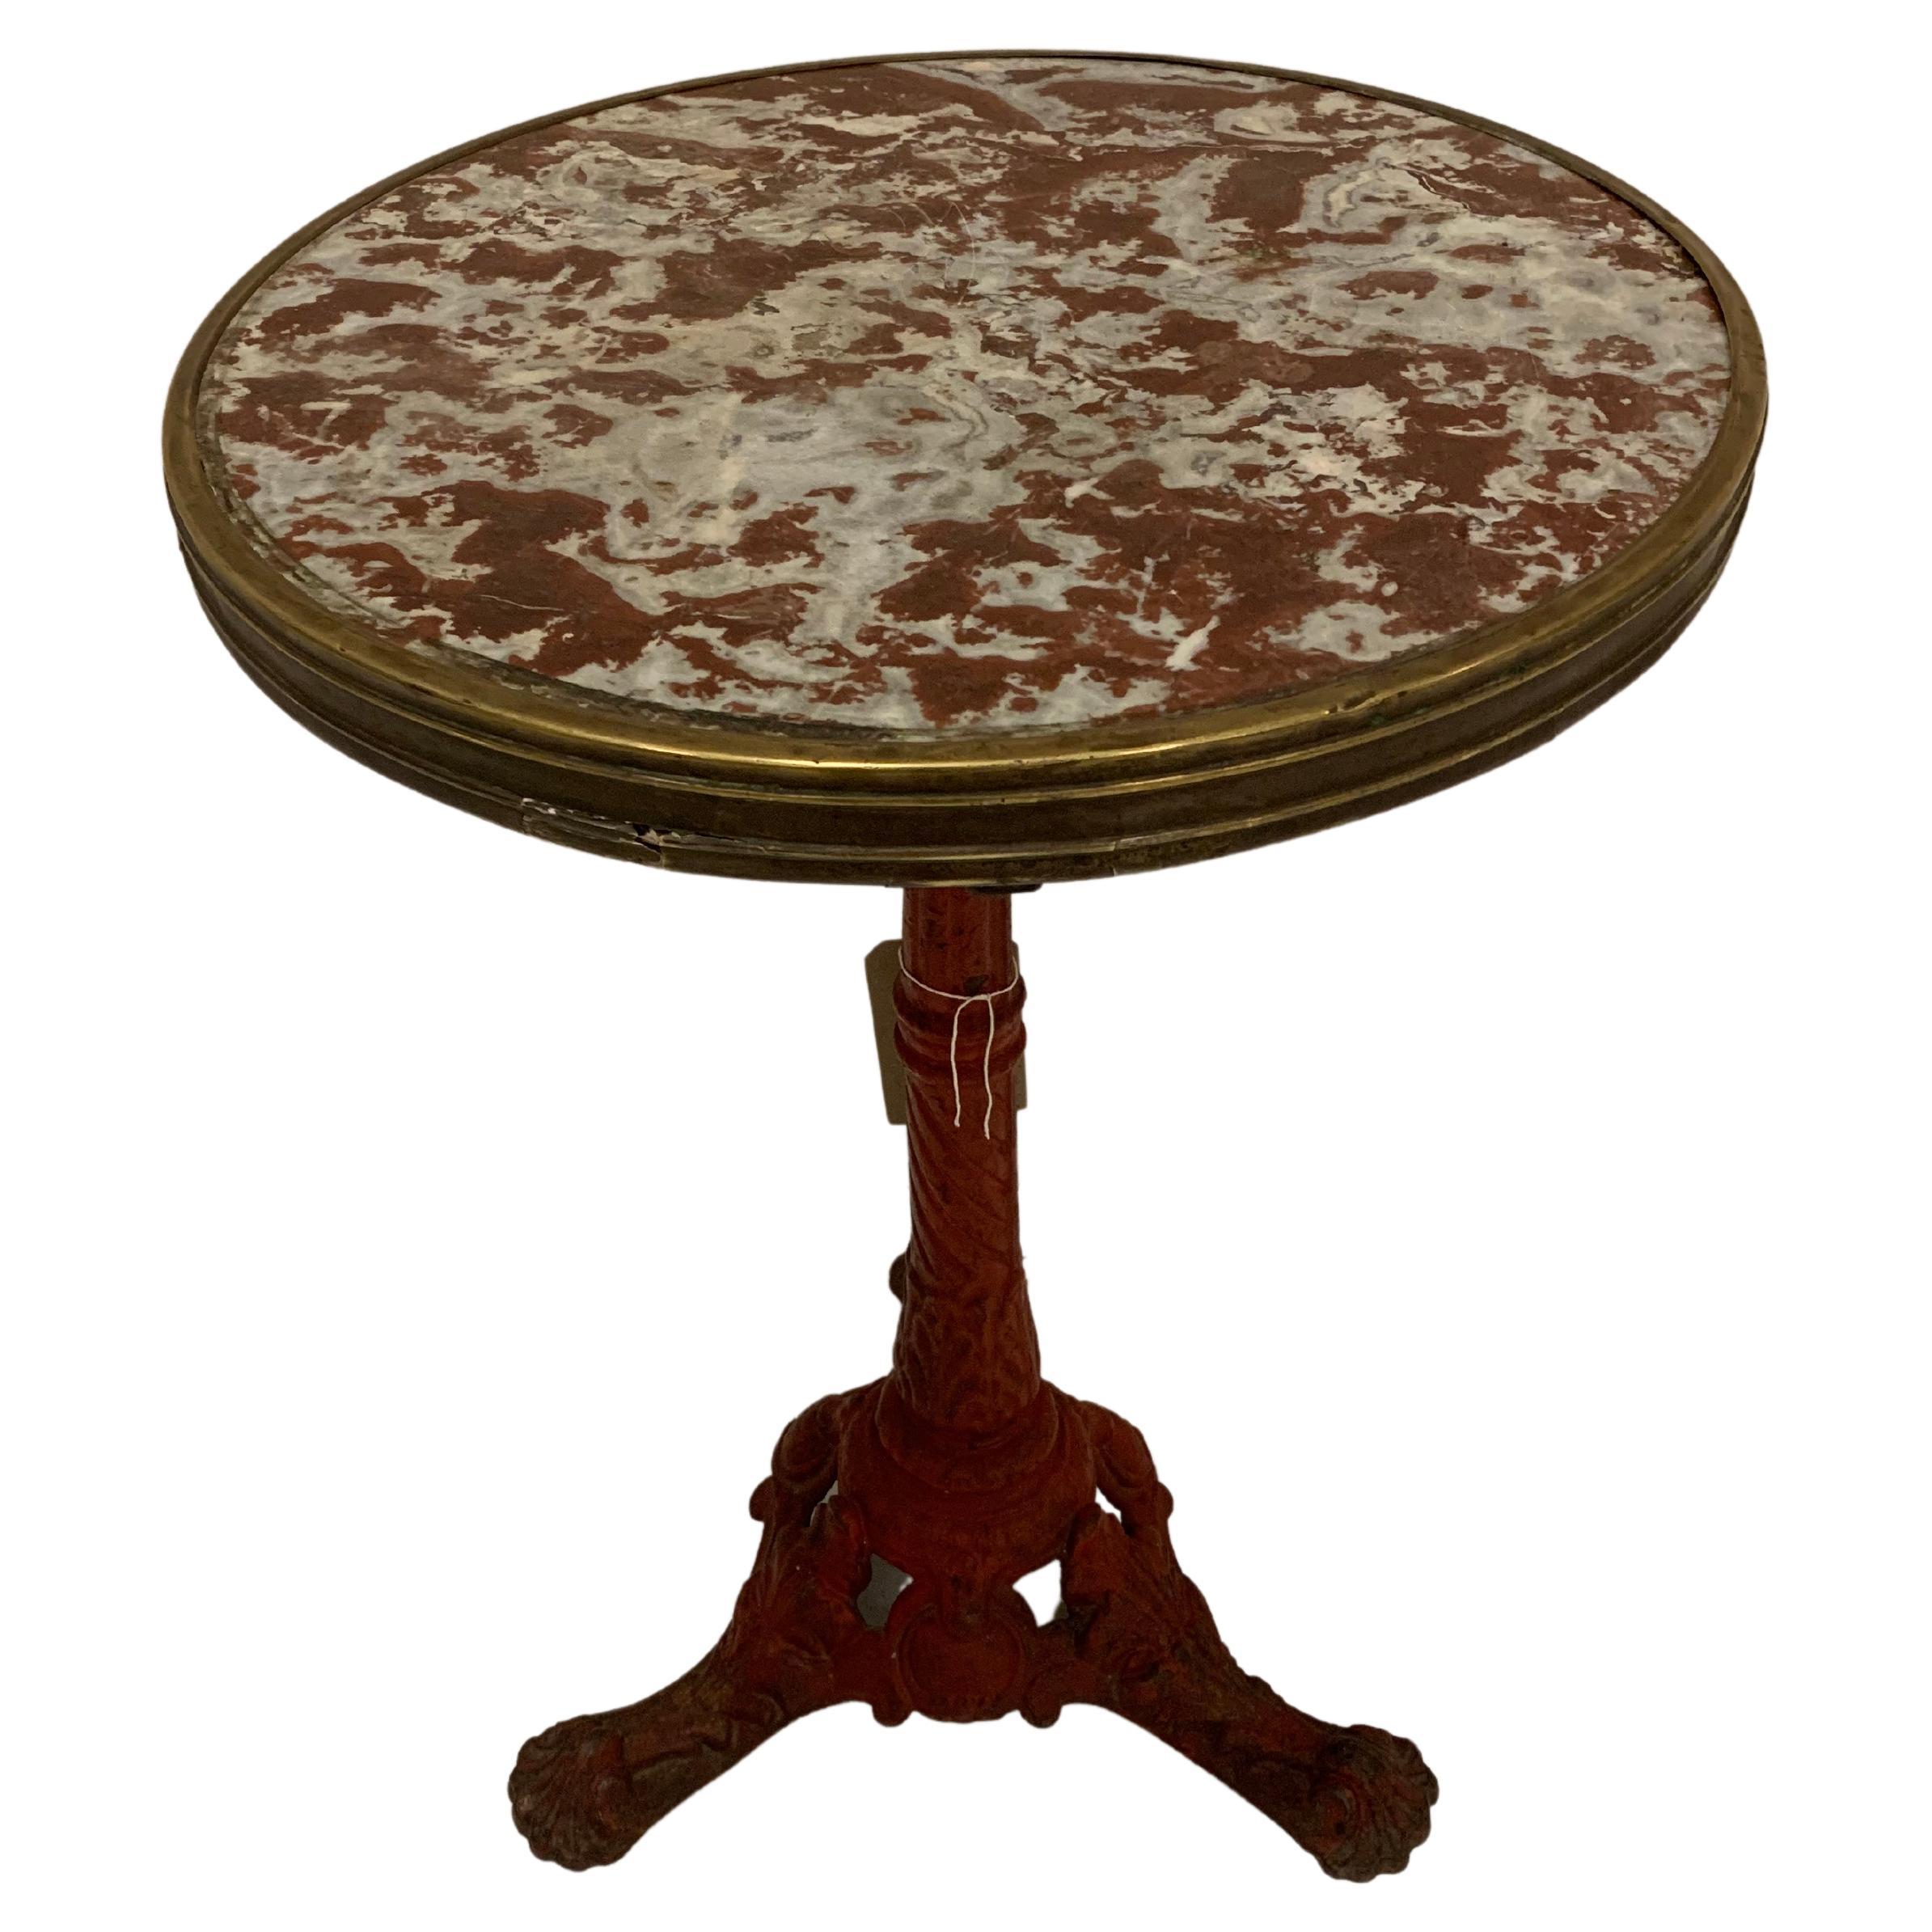 Circa 1900s Französisch Gusseisen Scalloped Detaillierte Bistro Tisch Runde Marmorplatte